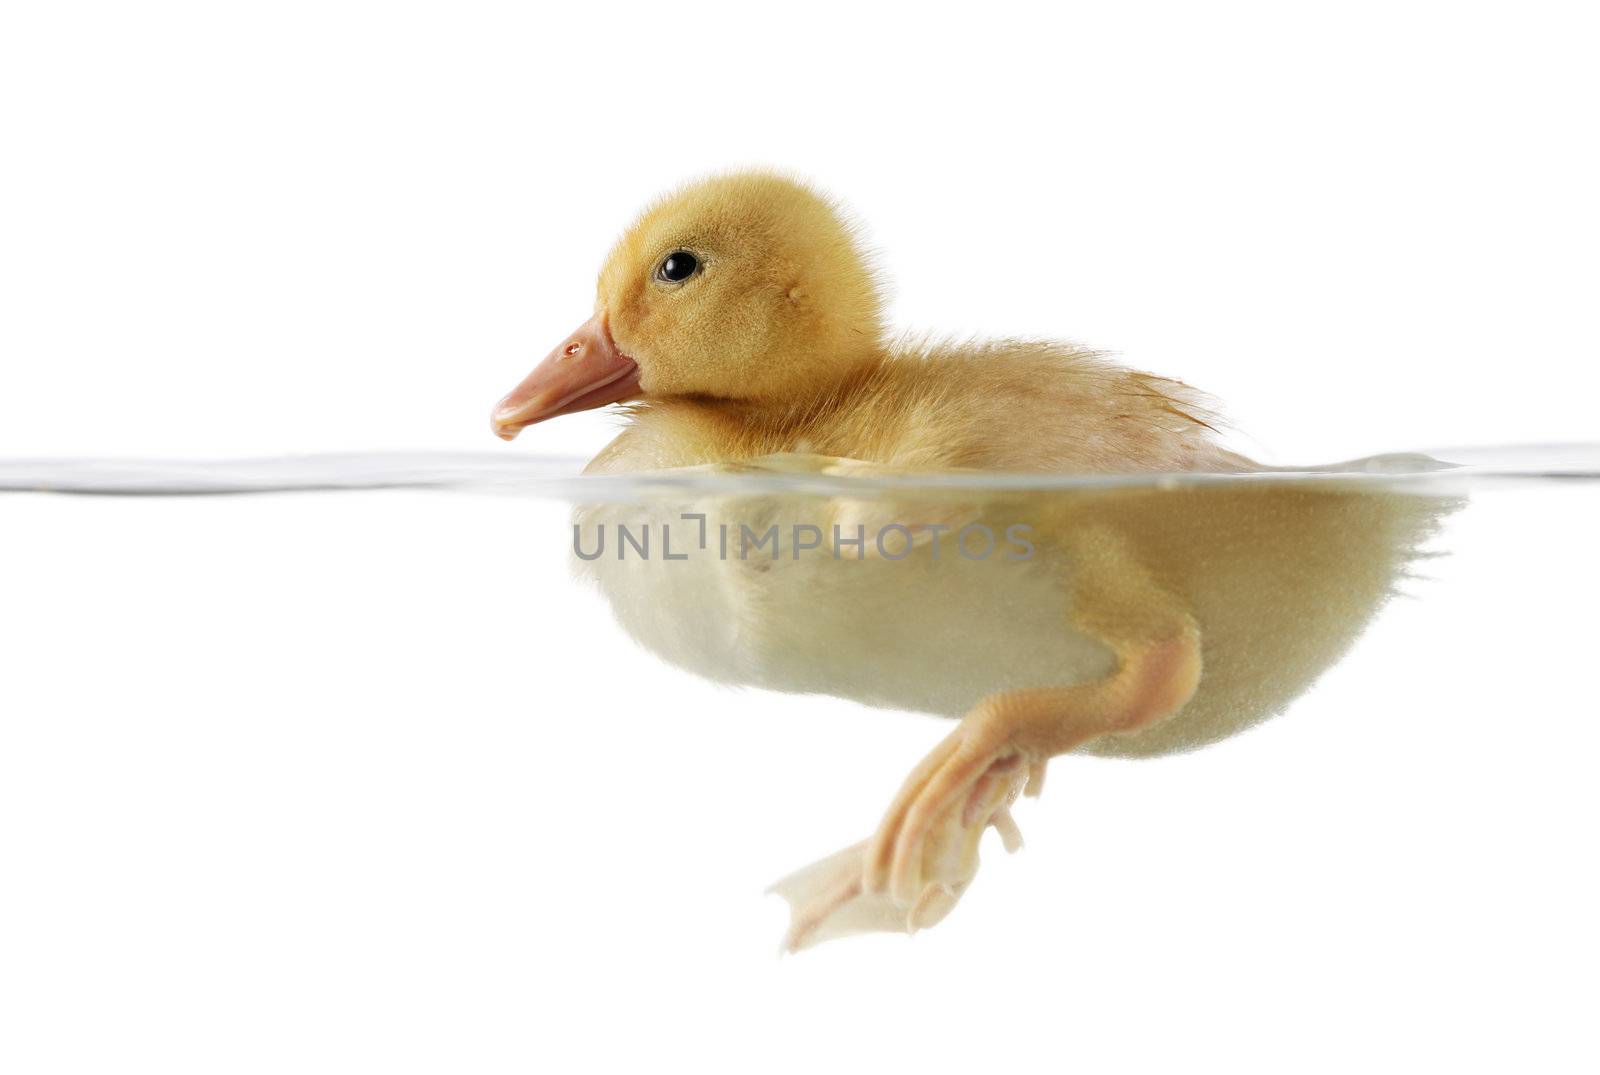 Cute duckling in water by jarenwicklund